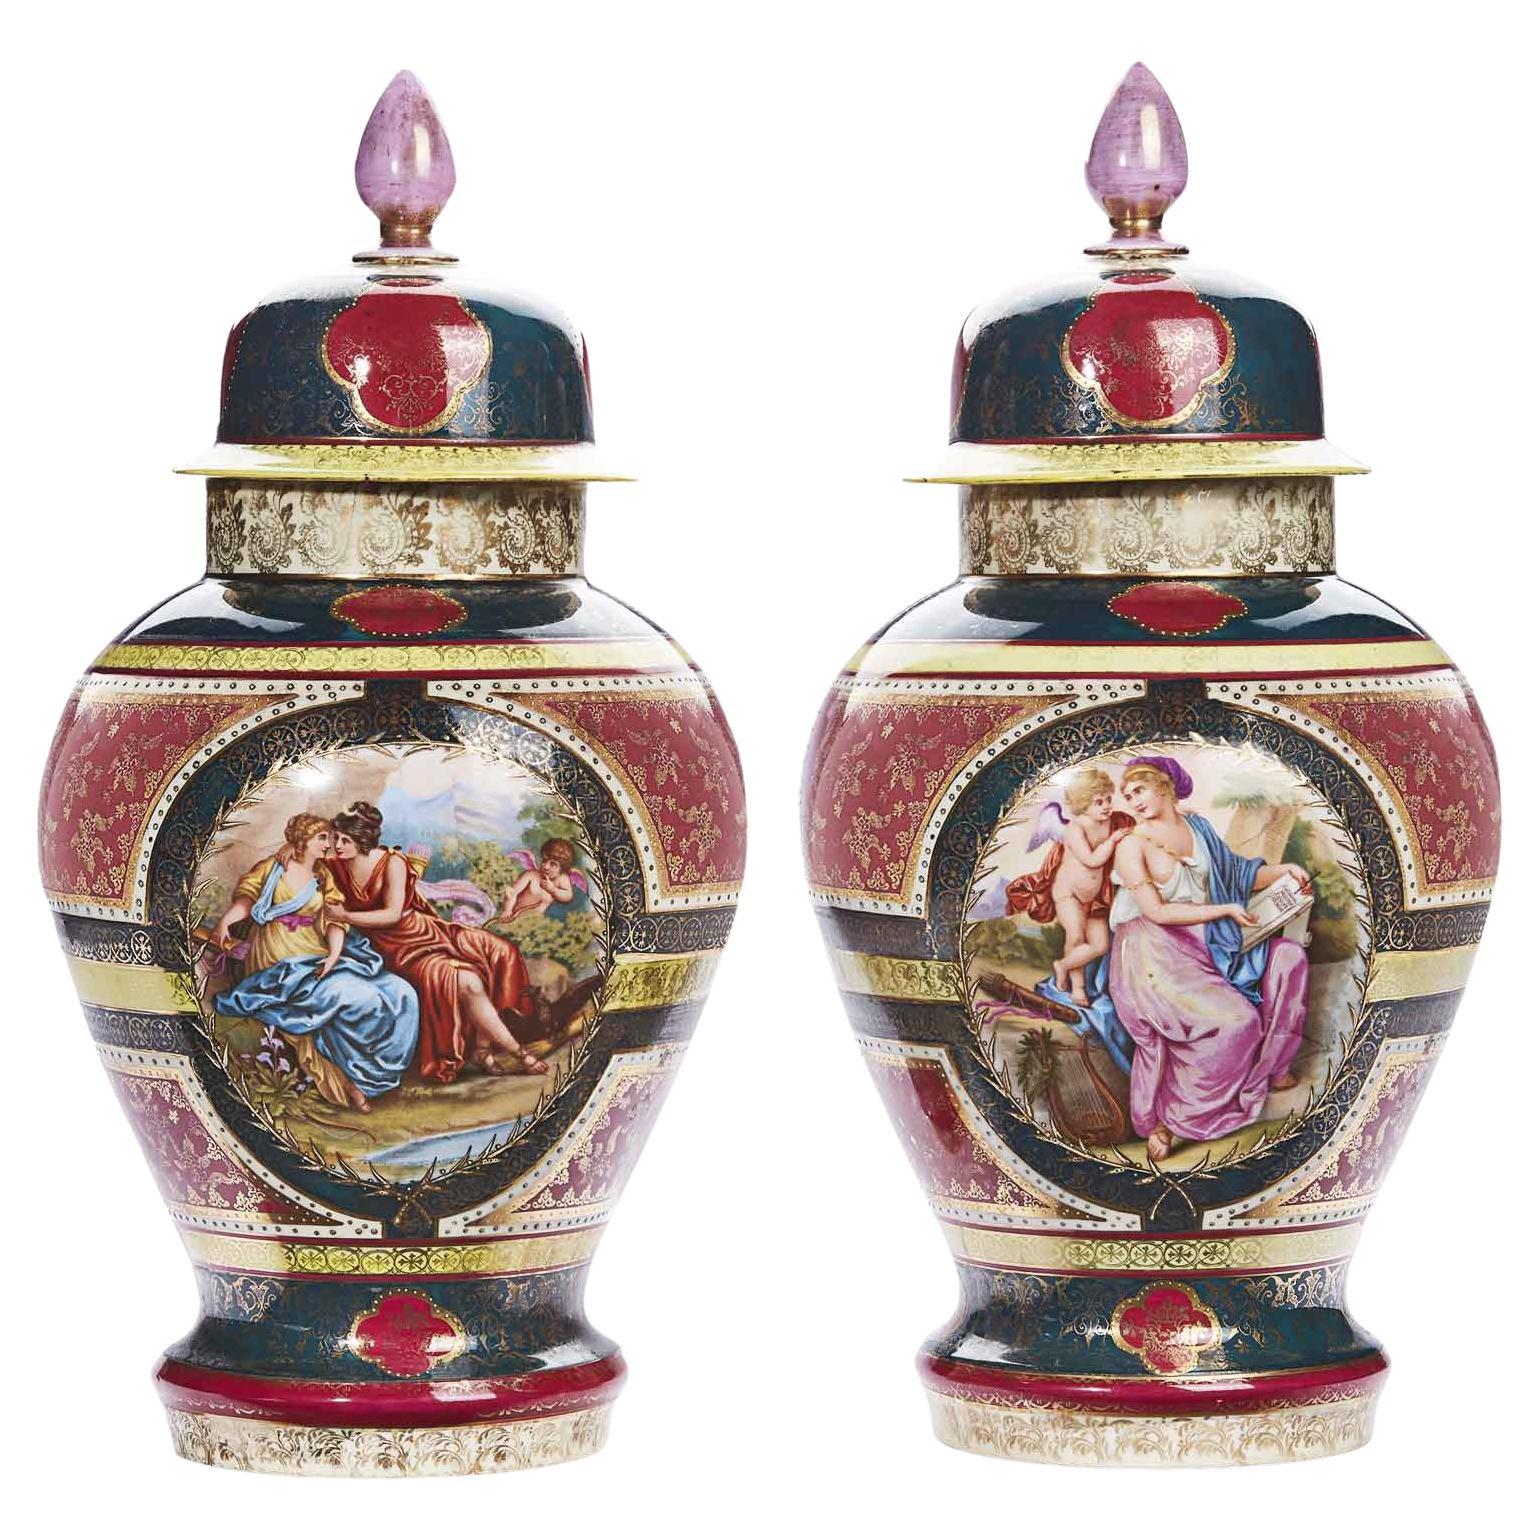 Paar Wiener Porzellanvasen des 19. Jahrhunderts, lila, rot, grün und Gold